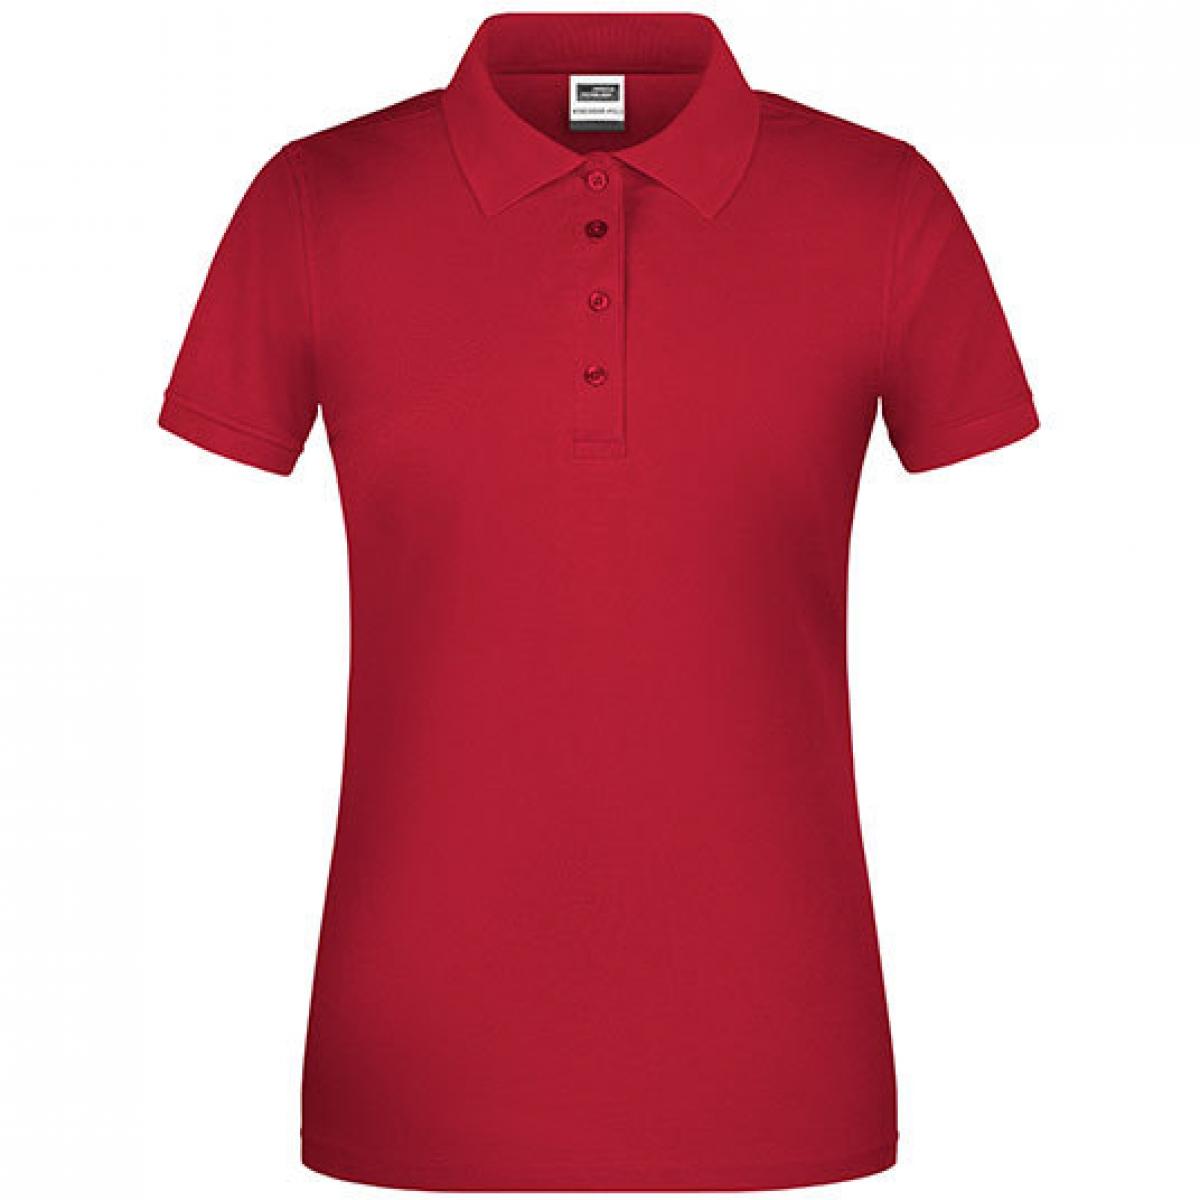 Hersteller: James+Nicholson Herstellernummer: JN873 Artikelbezeichnung: Damen Bio Workwear Polo, Waschbar bis 60 °C Farbe: Red